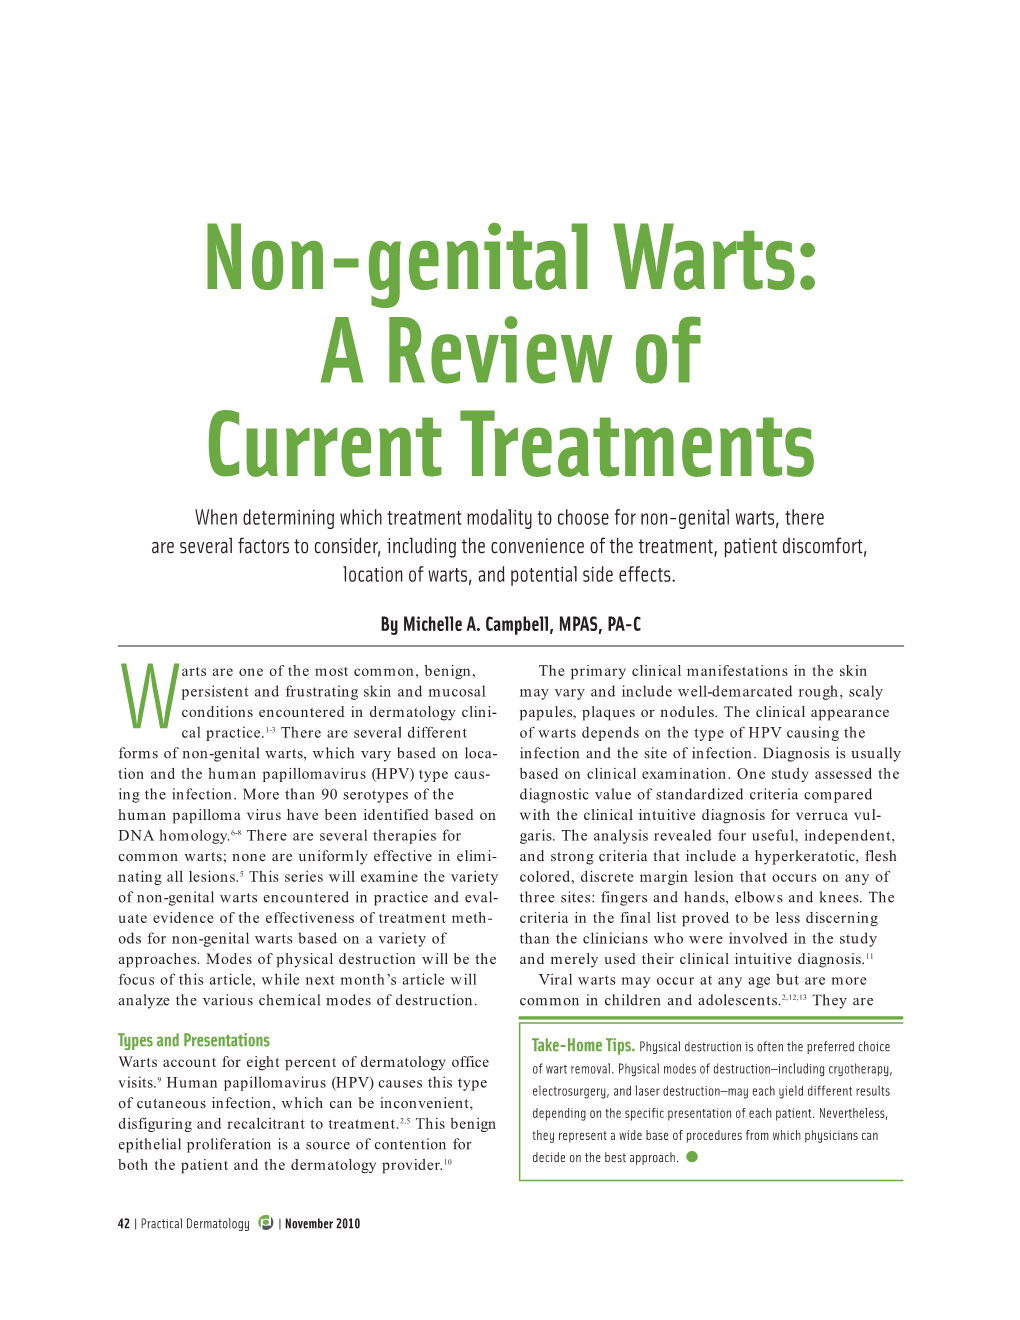 Non-Genital Warts